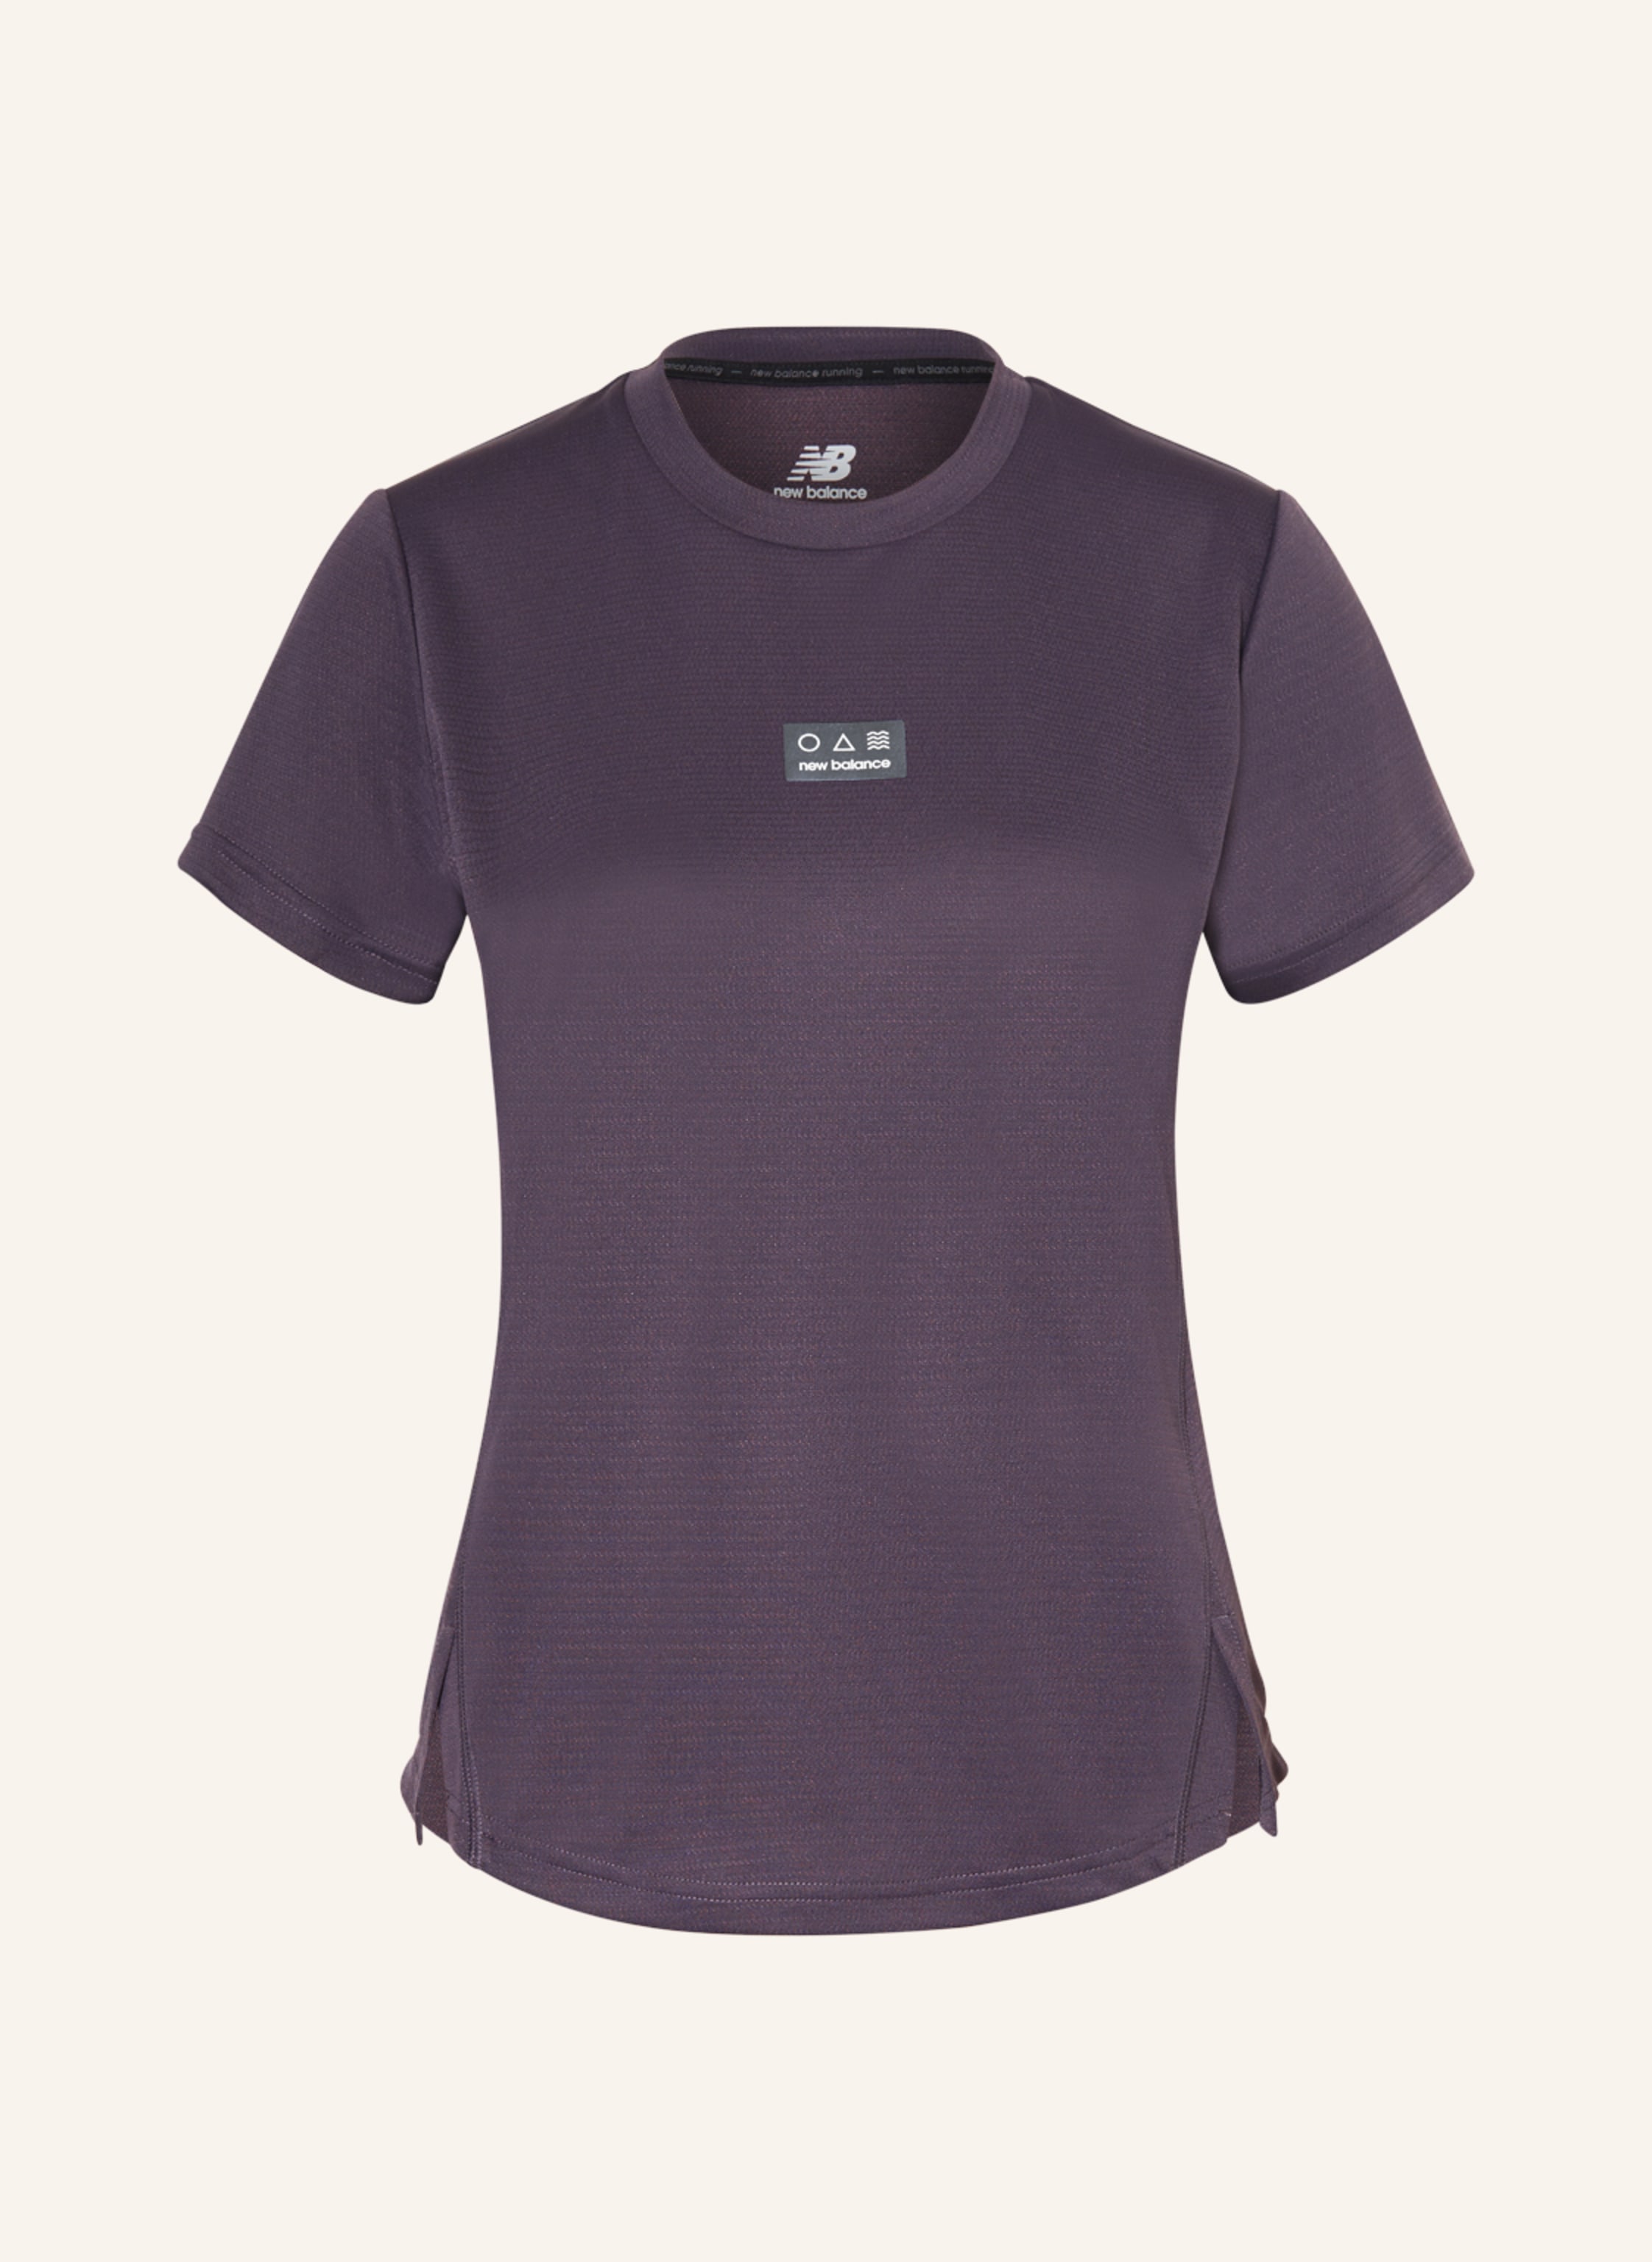 new balance Running shirt IMPACT RUN in dark purple